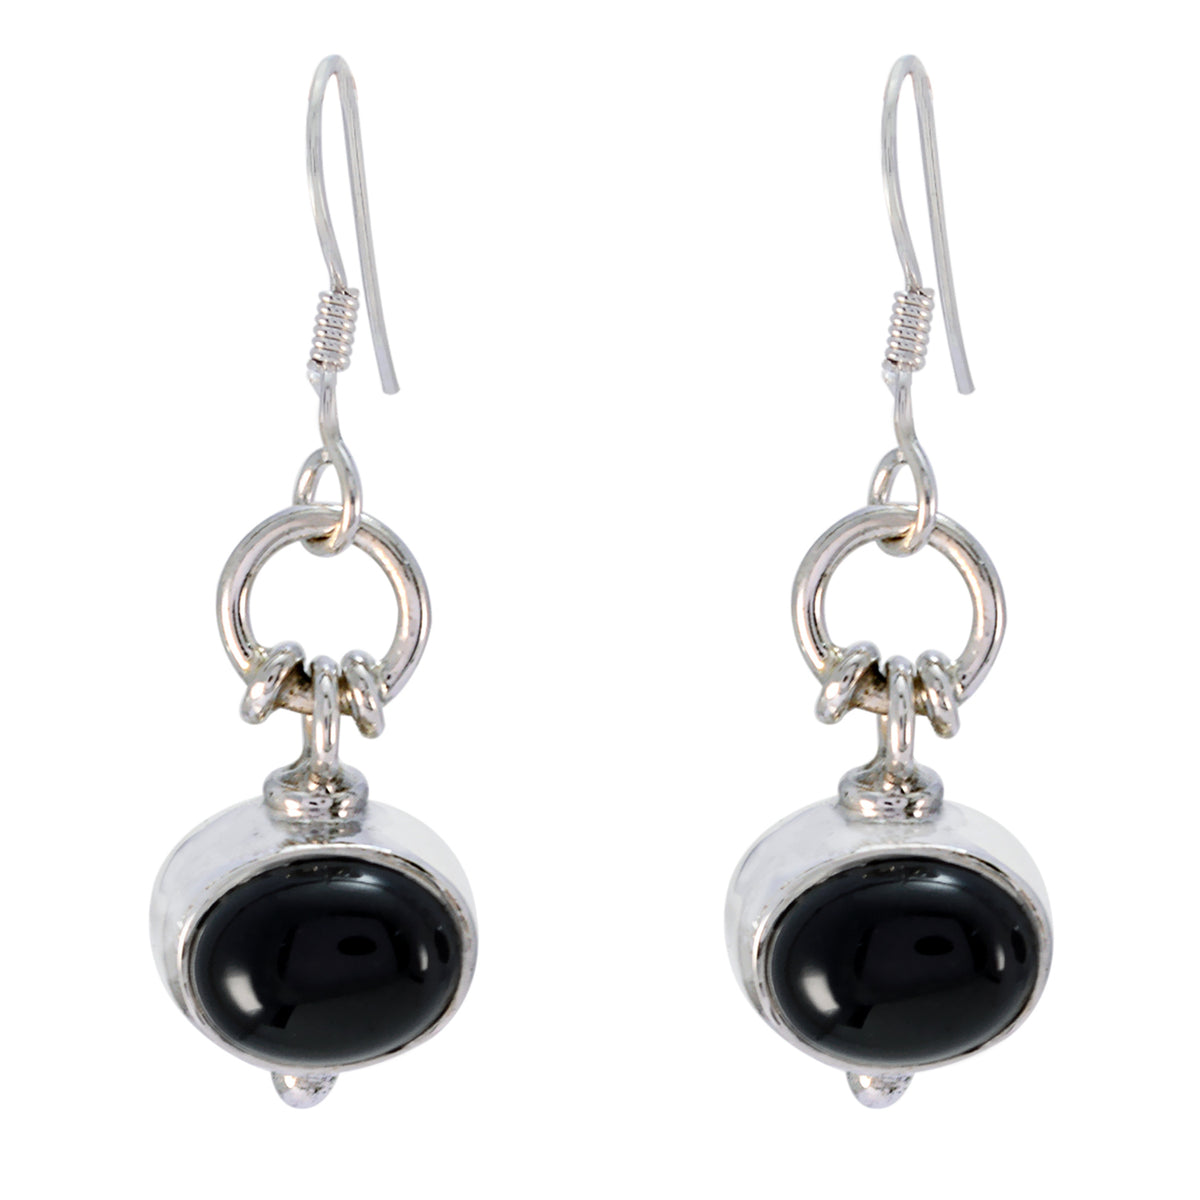 Riyo Nice Gemstone oval Cabochon Black Onyx Silver Earring graduation gift